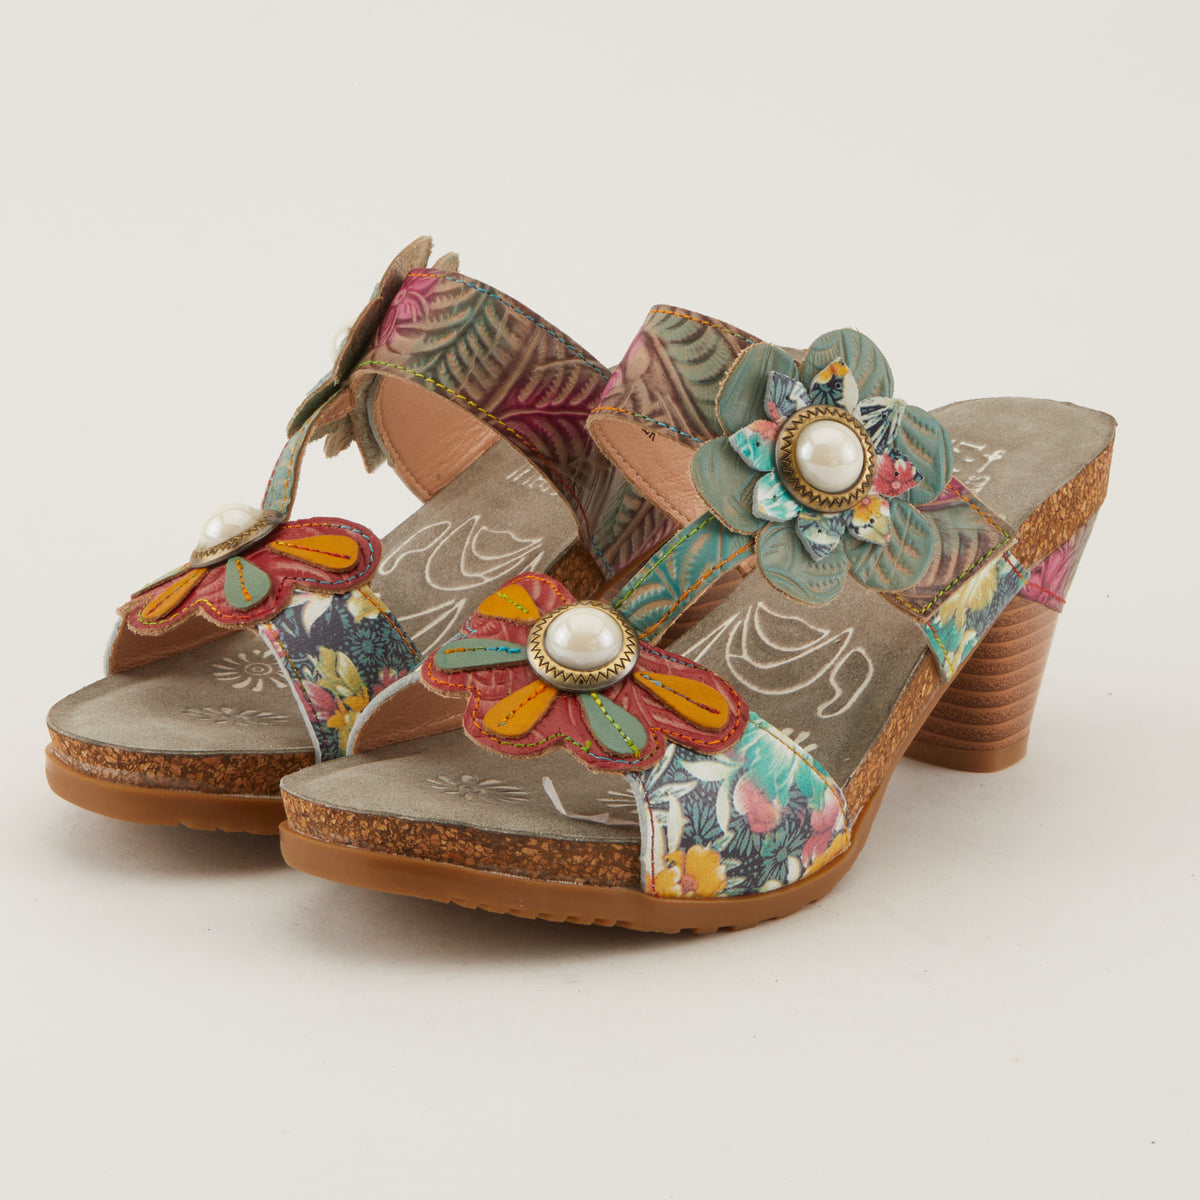 L'ARTISTE BARI PLATFORM SANDALS by L'ARTISTE – Spring Step Shoes